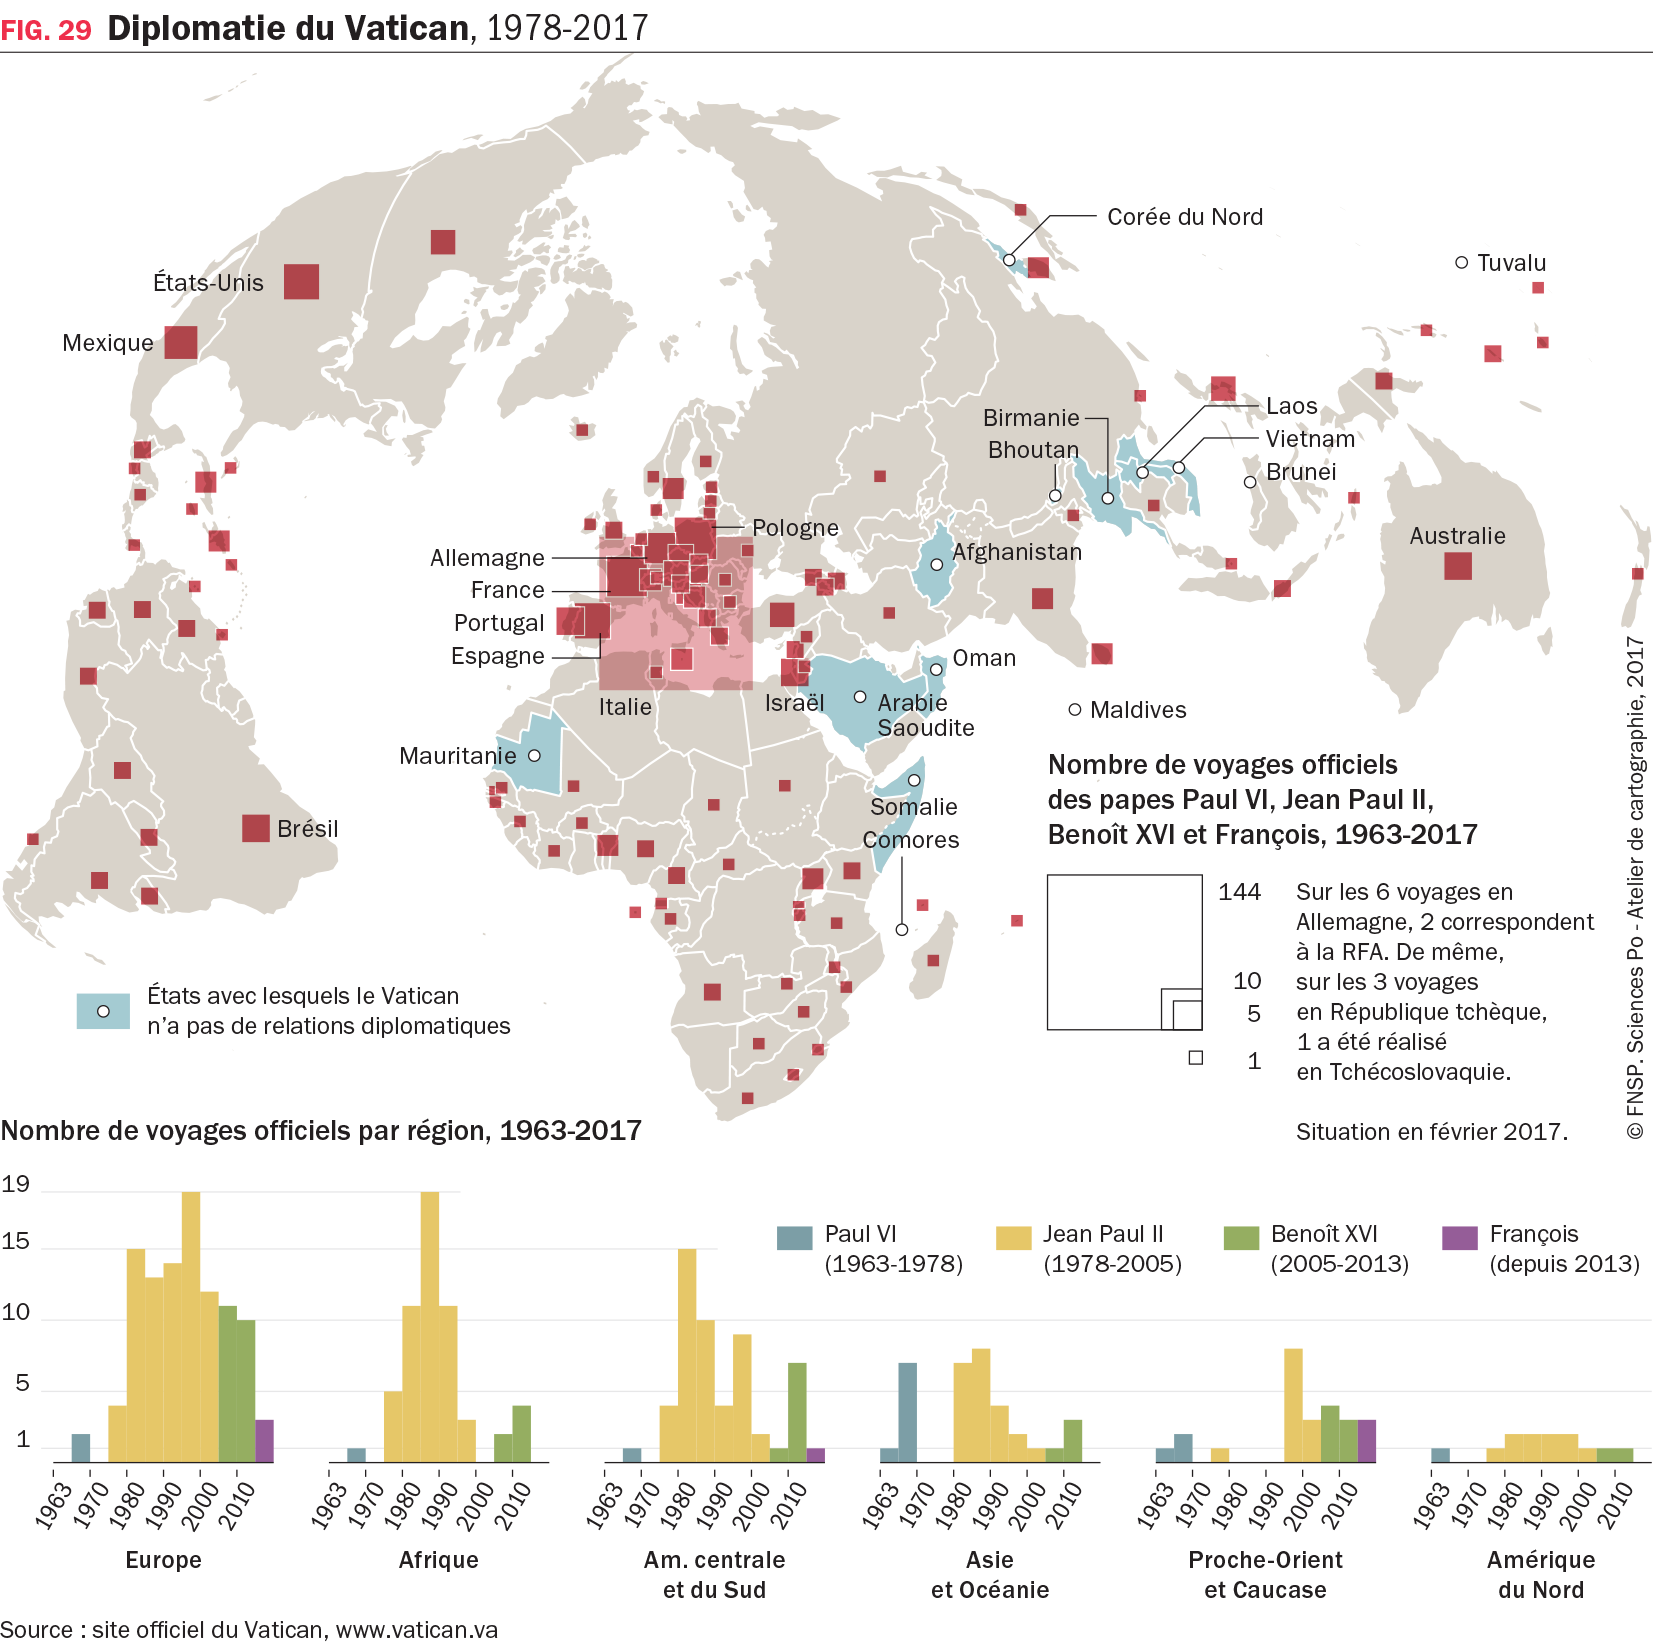 1 carte et 1 graphique : Diplomatie du Vatican, 1978-2017